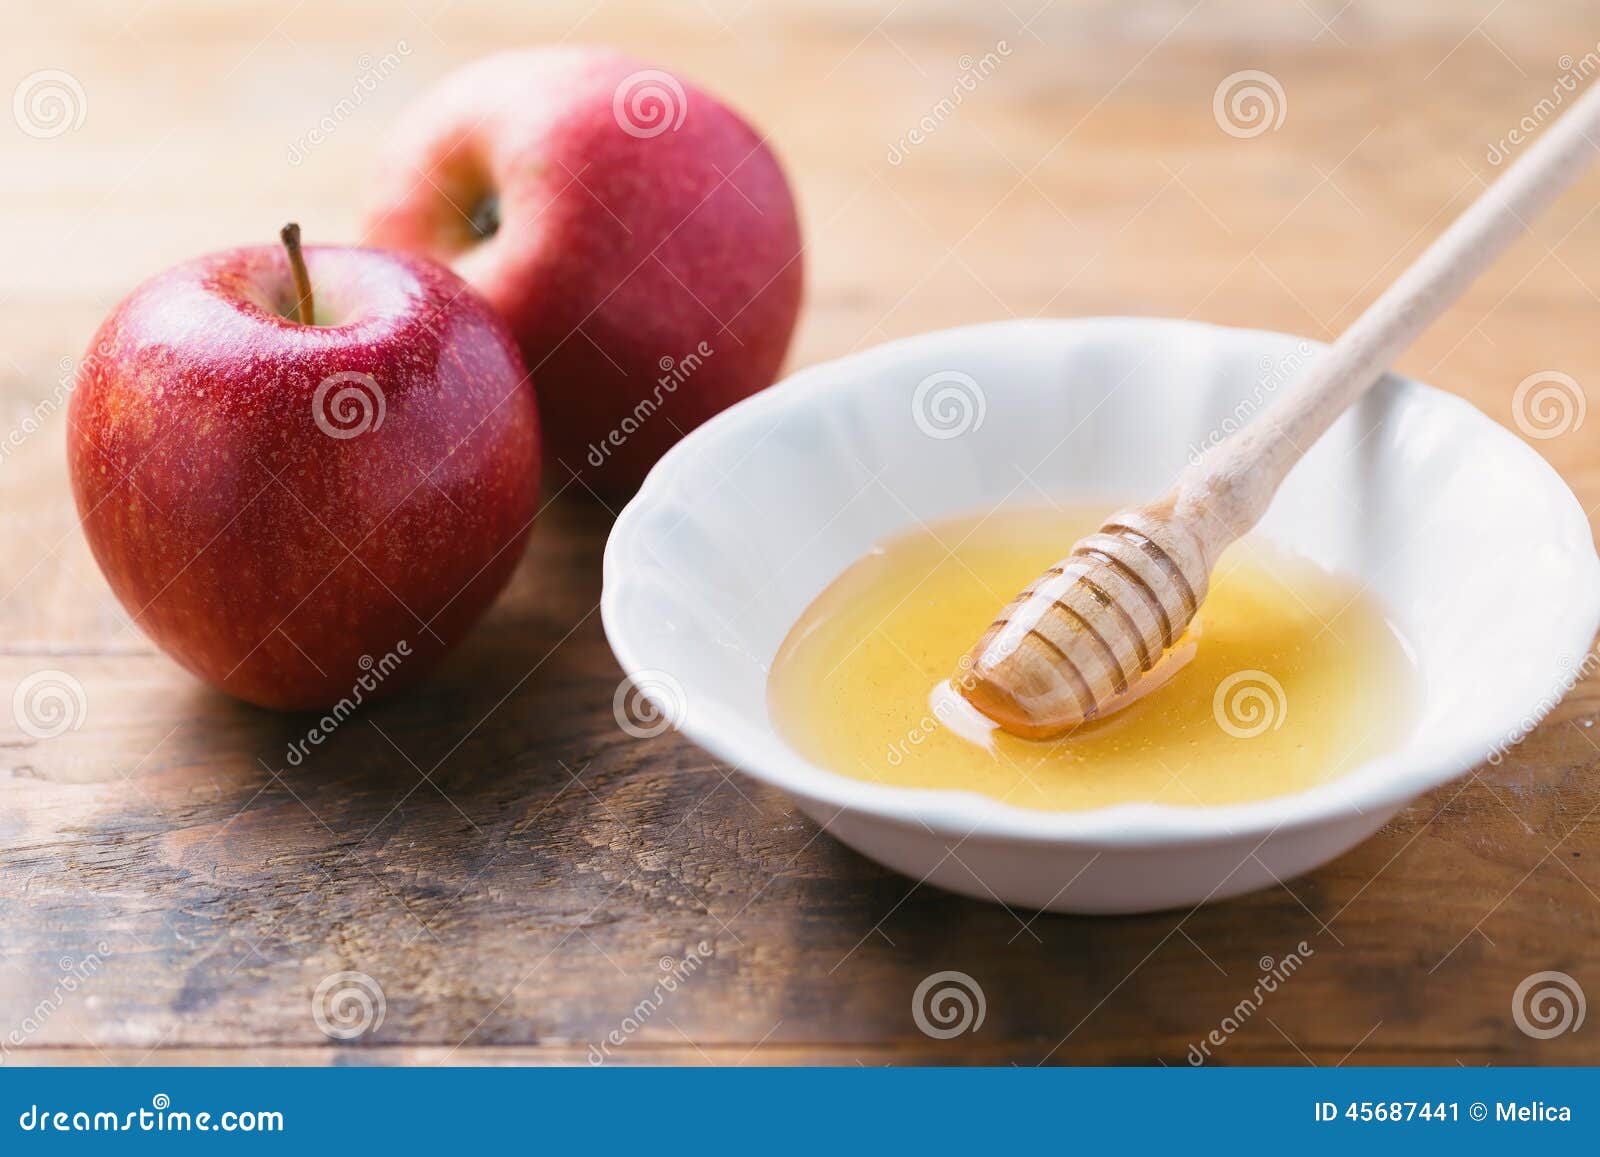 Фруктоза в яблоках. Яблоки с медом. Фруктоза мед. Фруктоза Эстетика.